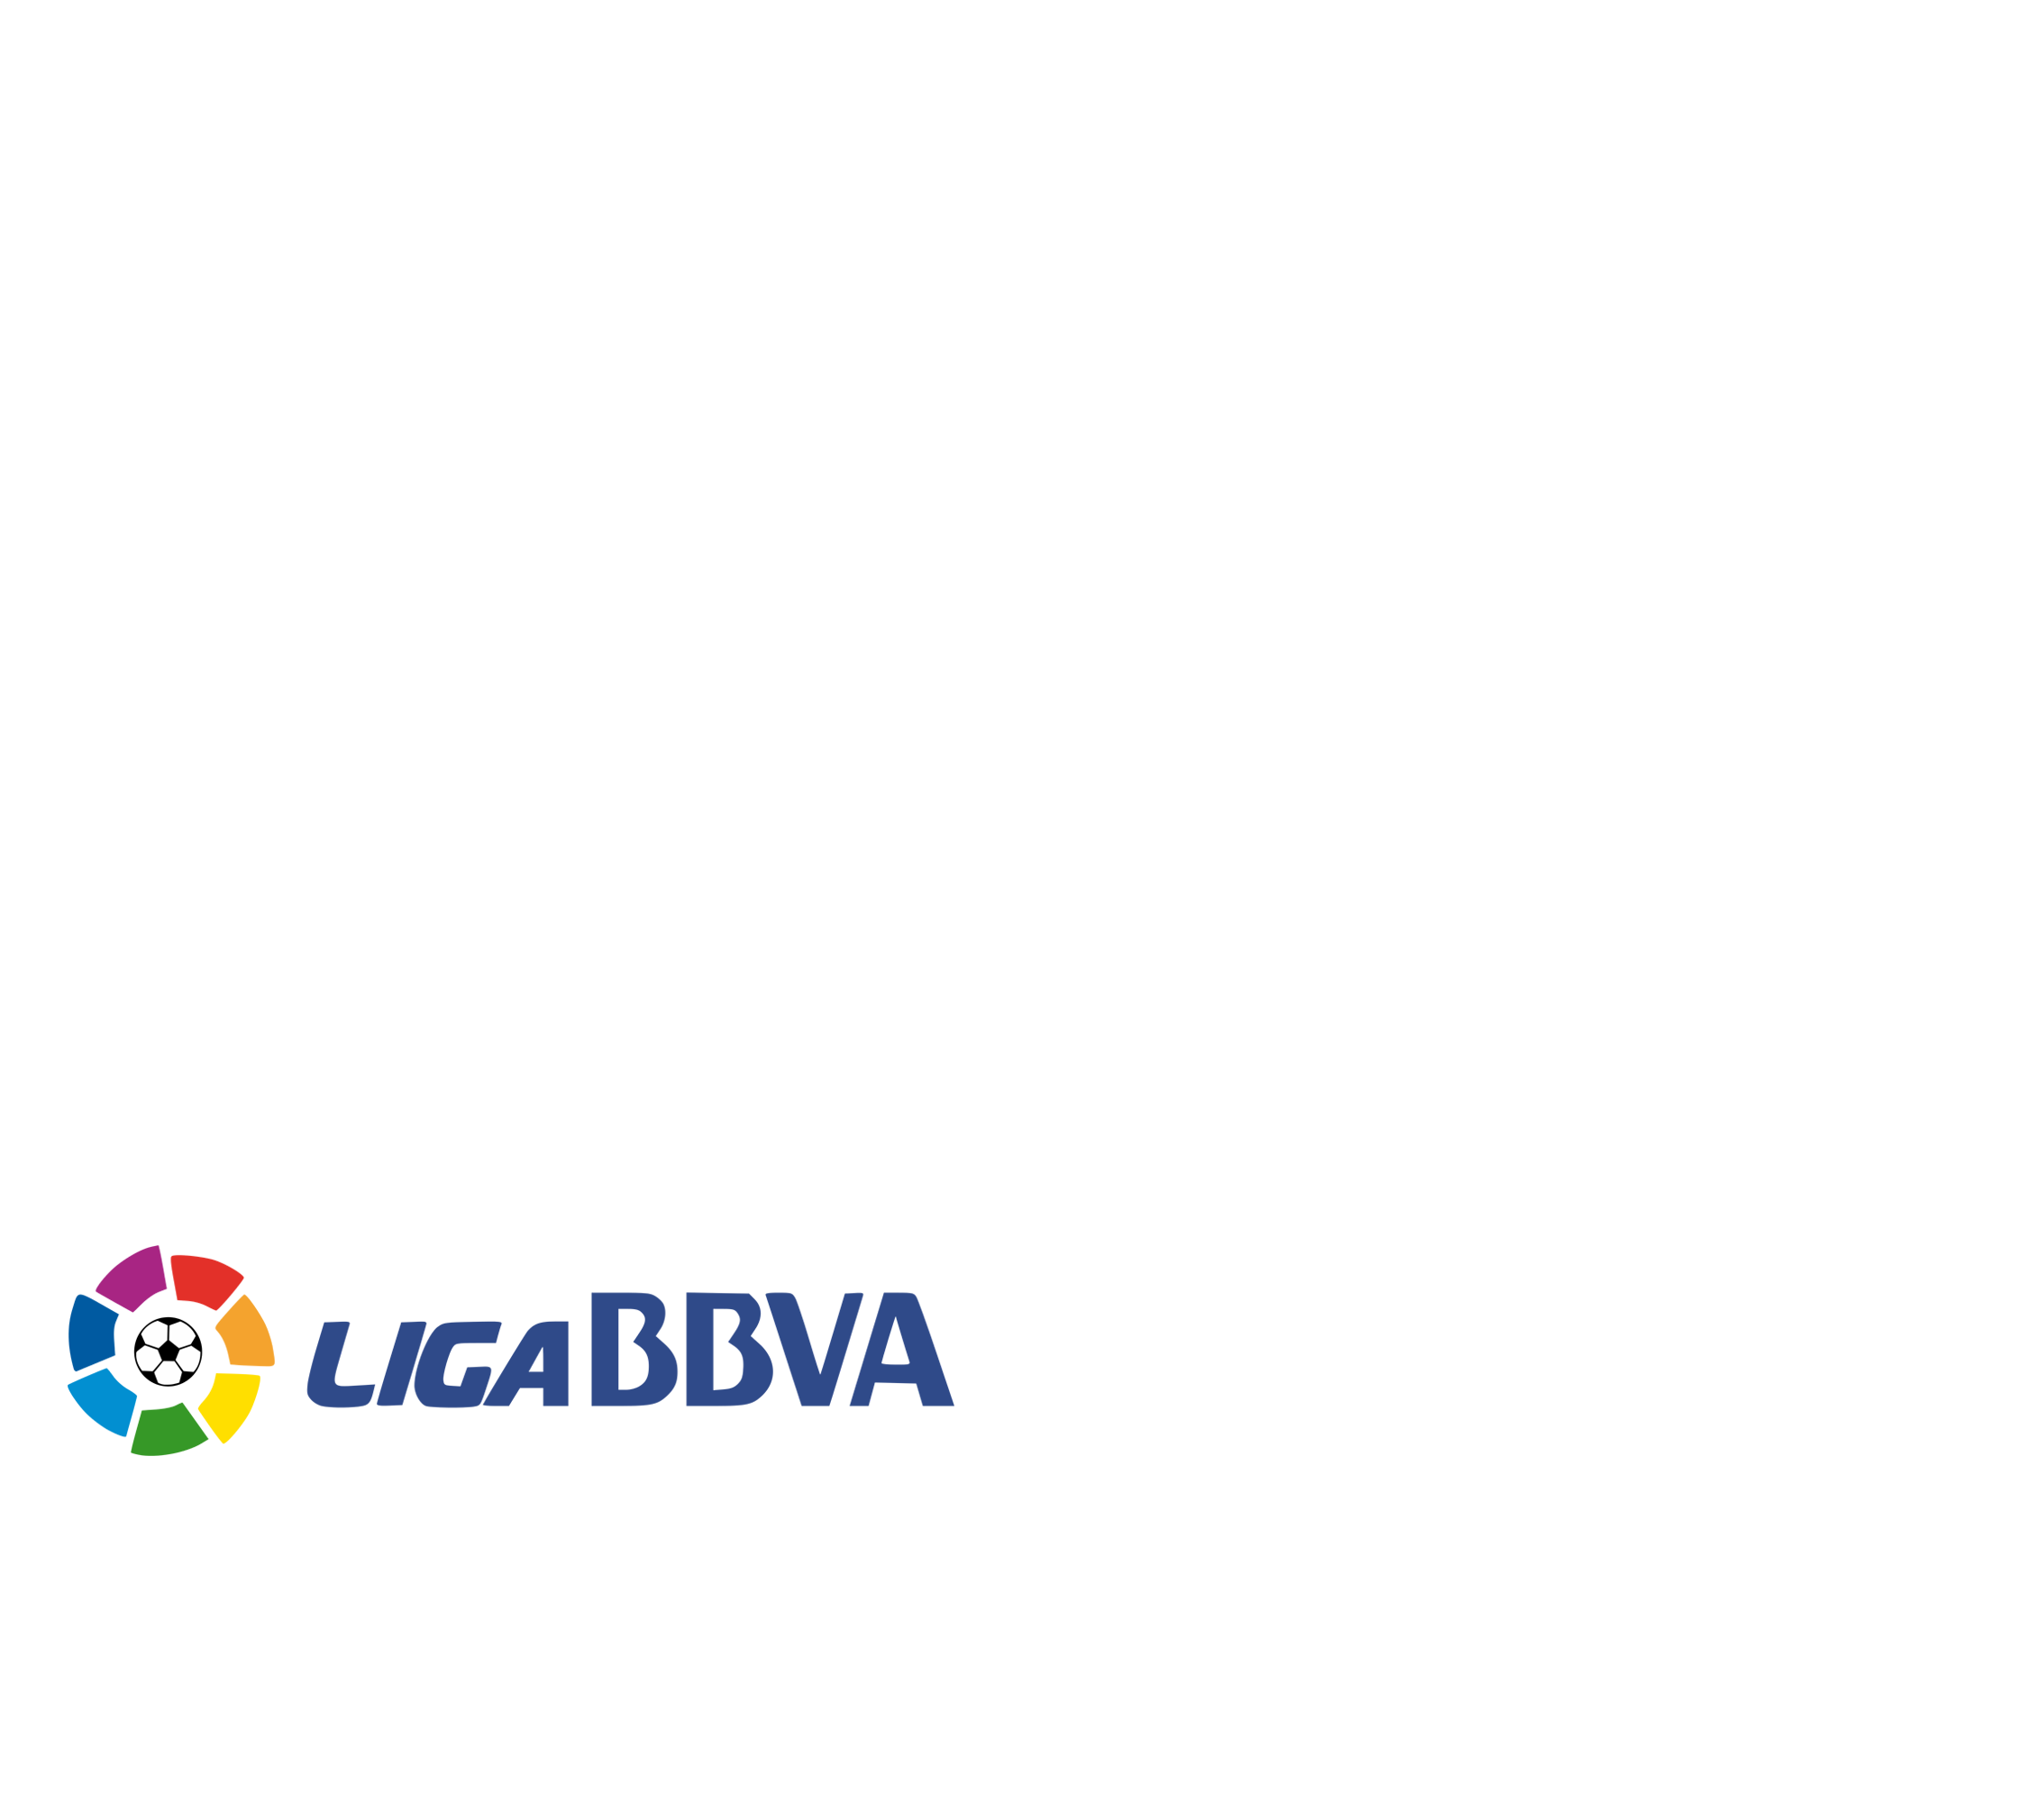 Classificació de la Lliga BBVA 2015/16